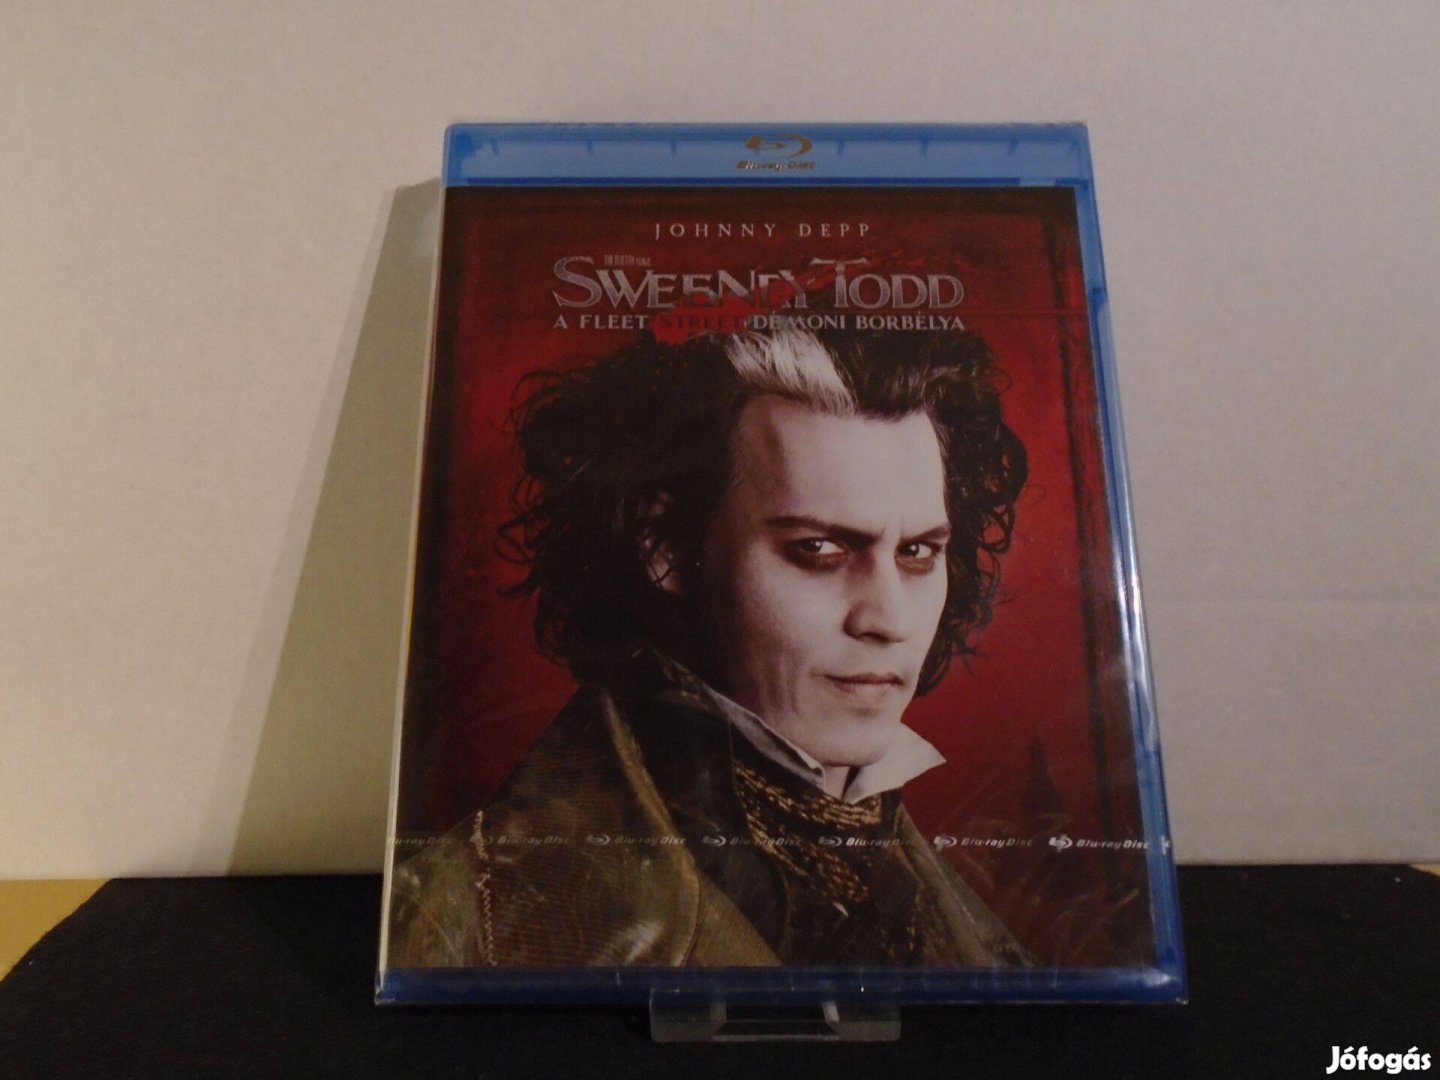 Sweeney Todd - A Fleet Street démoni borbélya 2007 Blu-ray / bluray